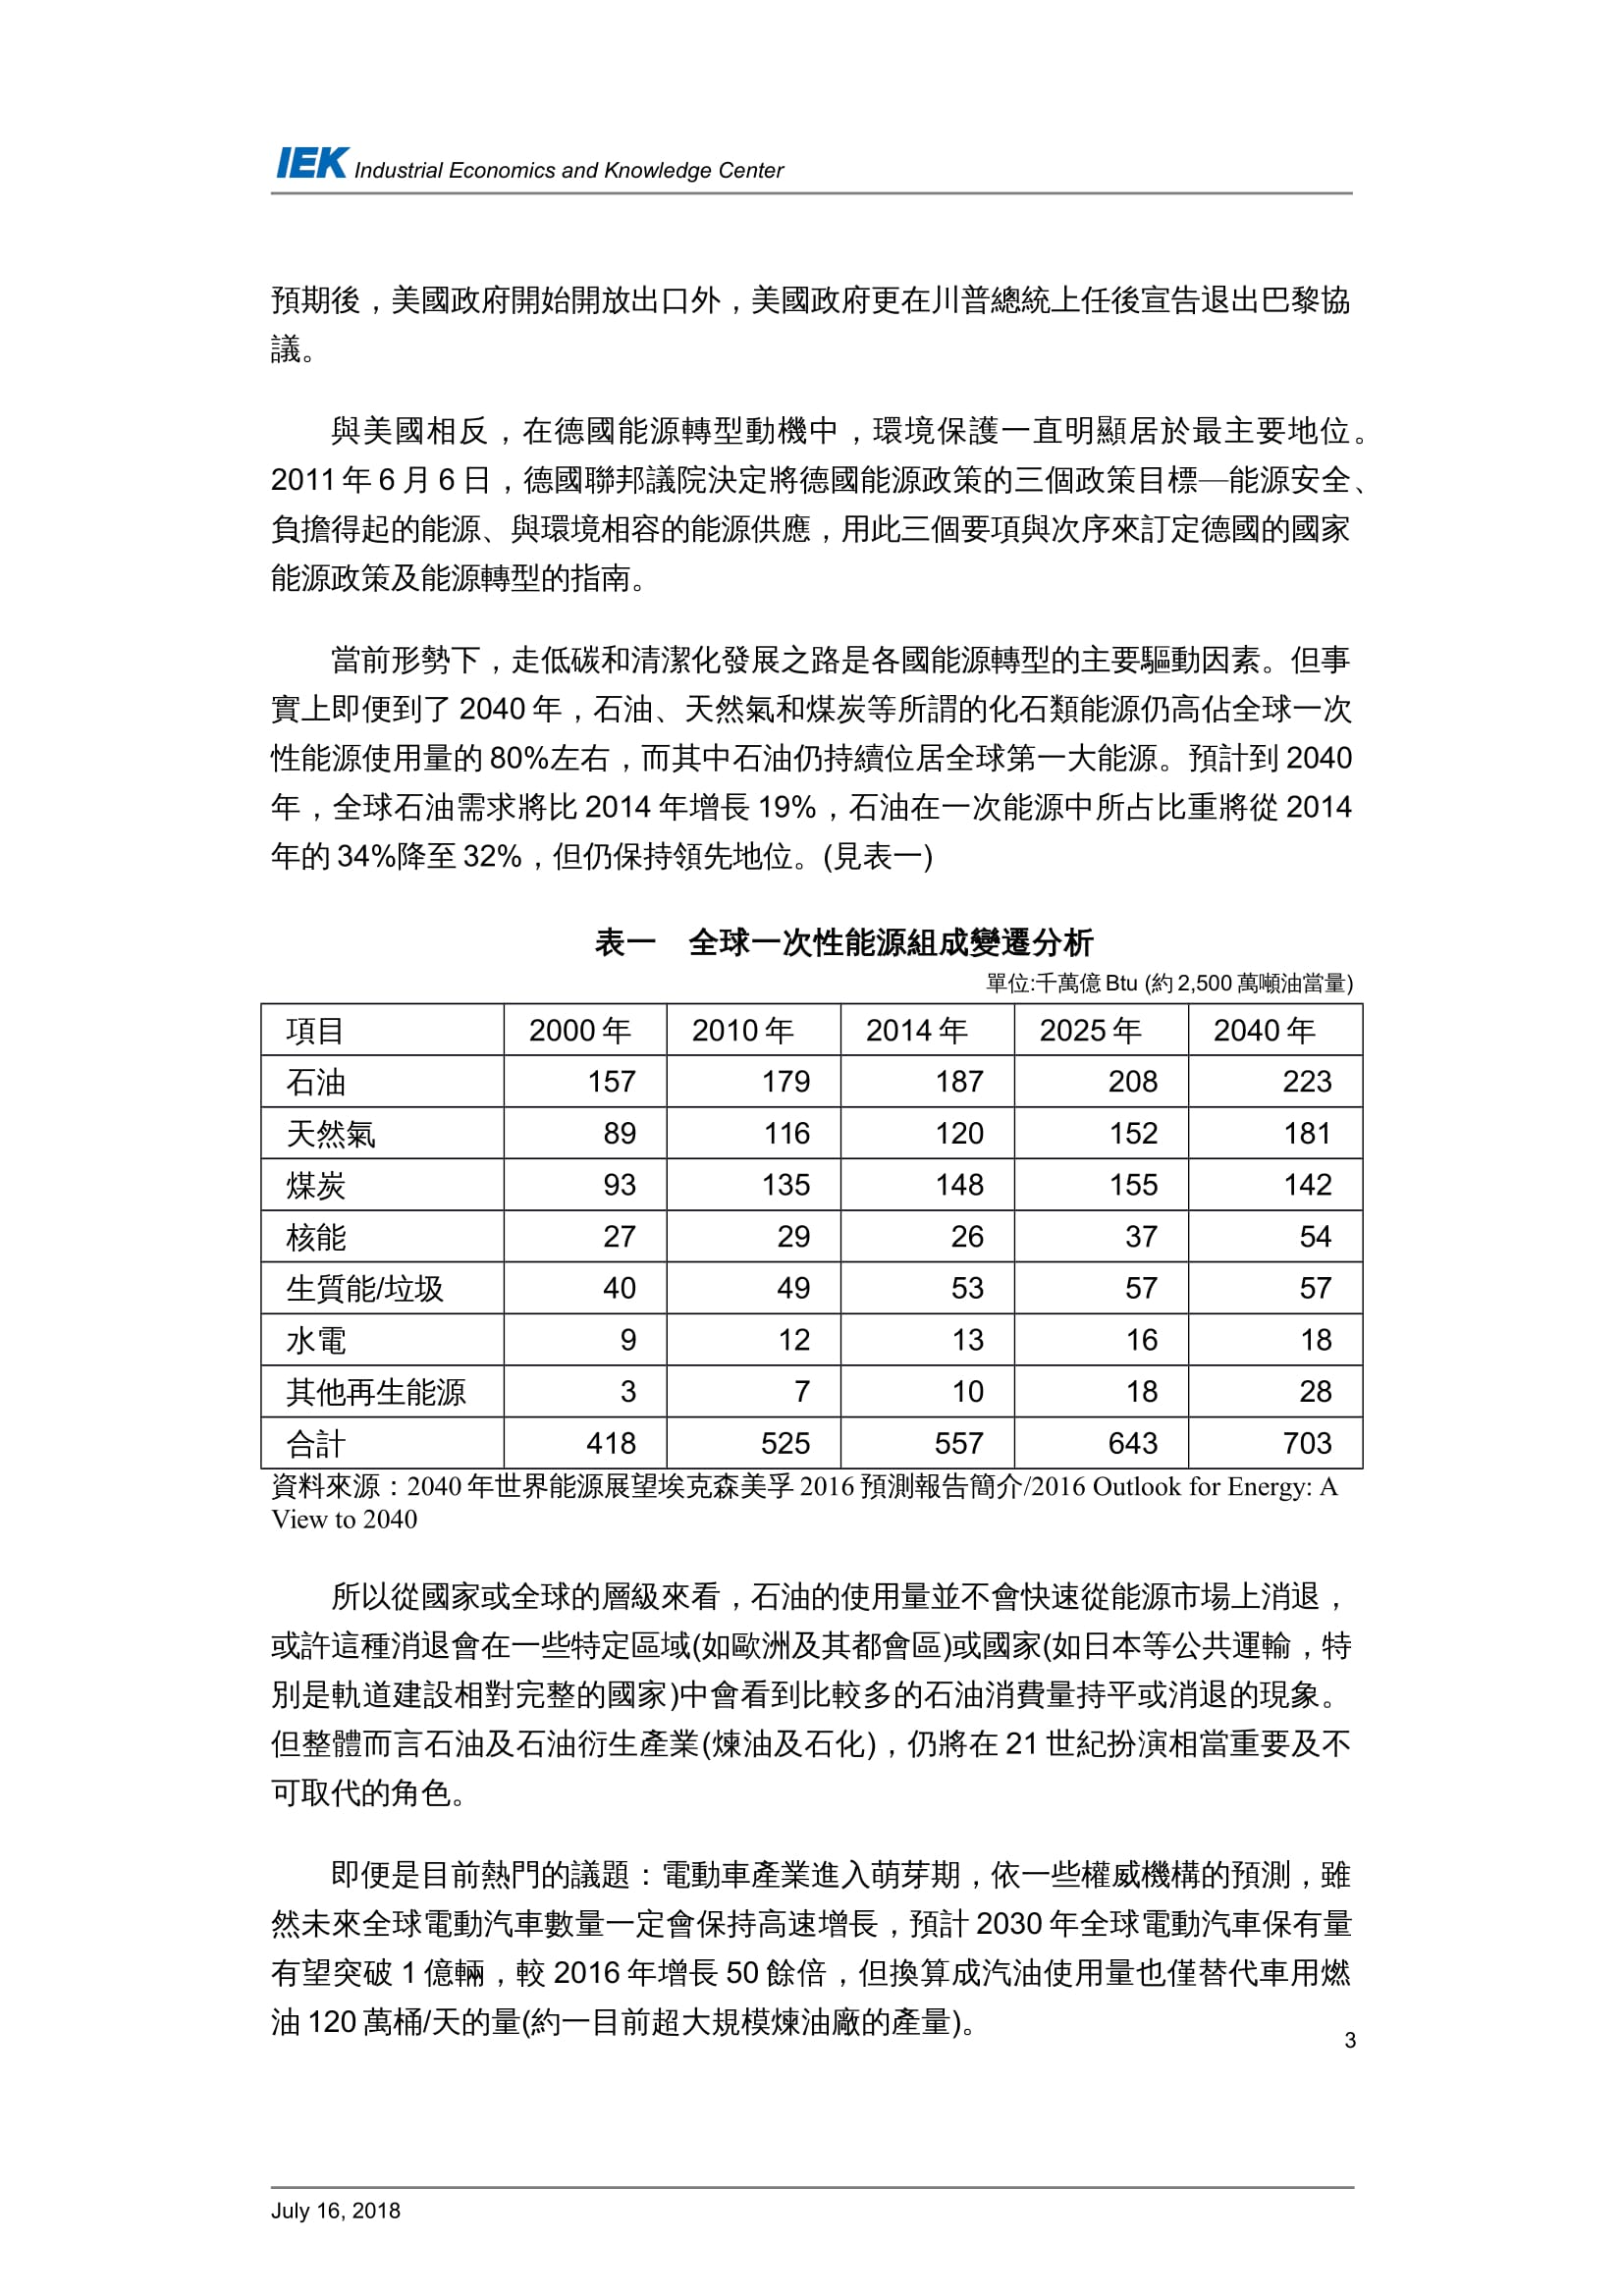 從國外石油產業的轉型看台灣中油的轉型策略_共11頁_第5頁內文(詳如下方附件)